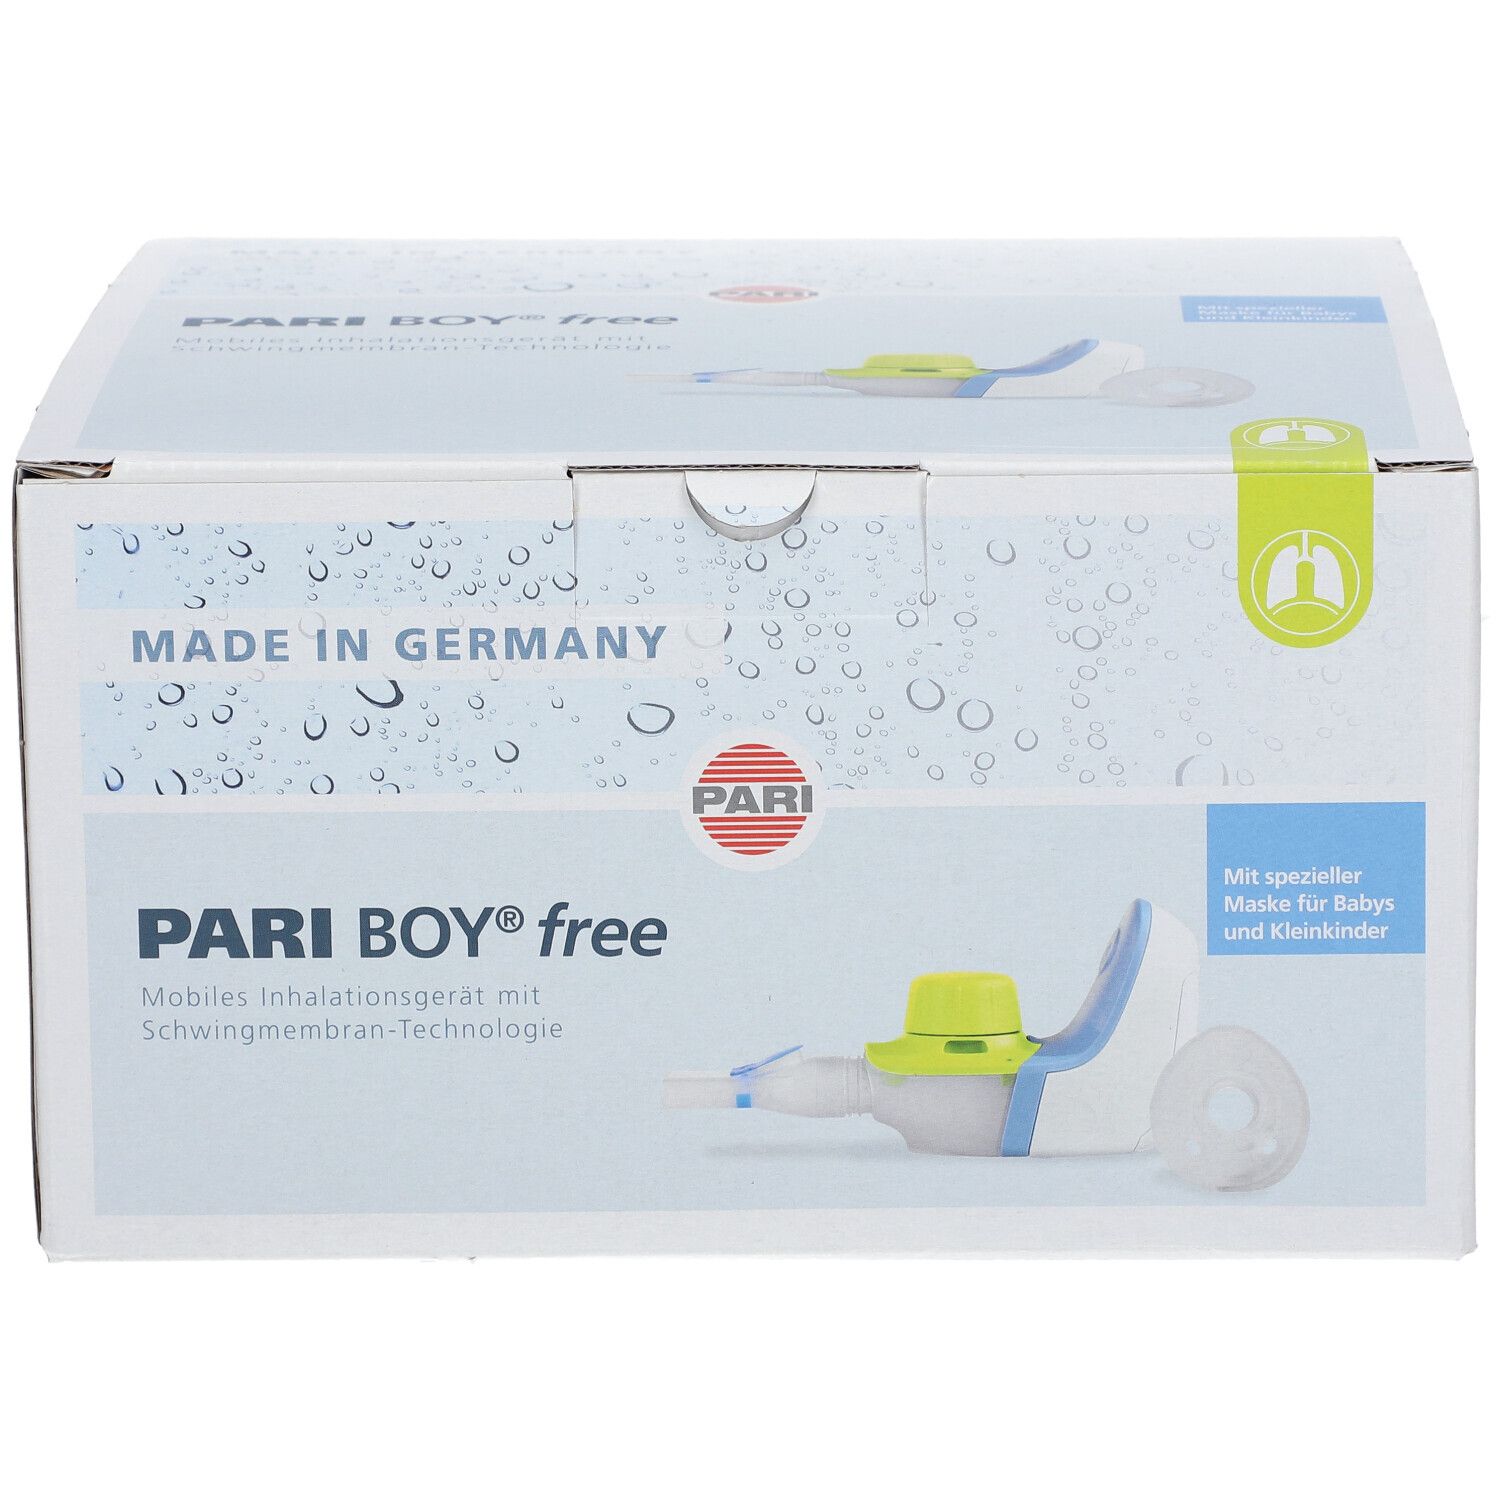 PARI BOY free Inhalationsgerät